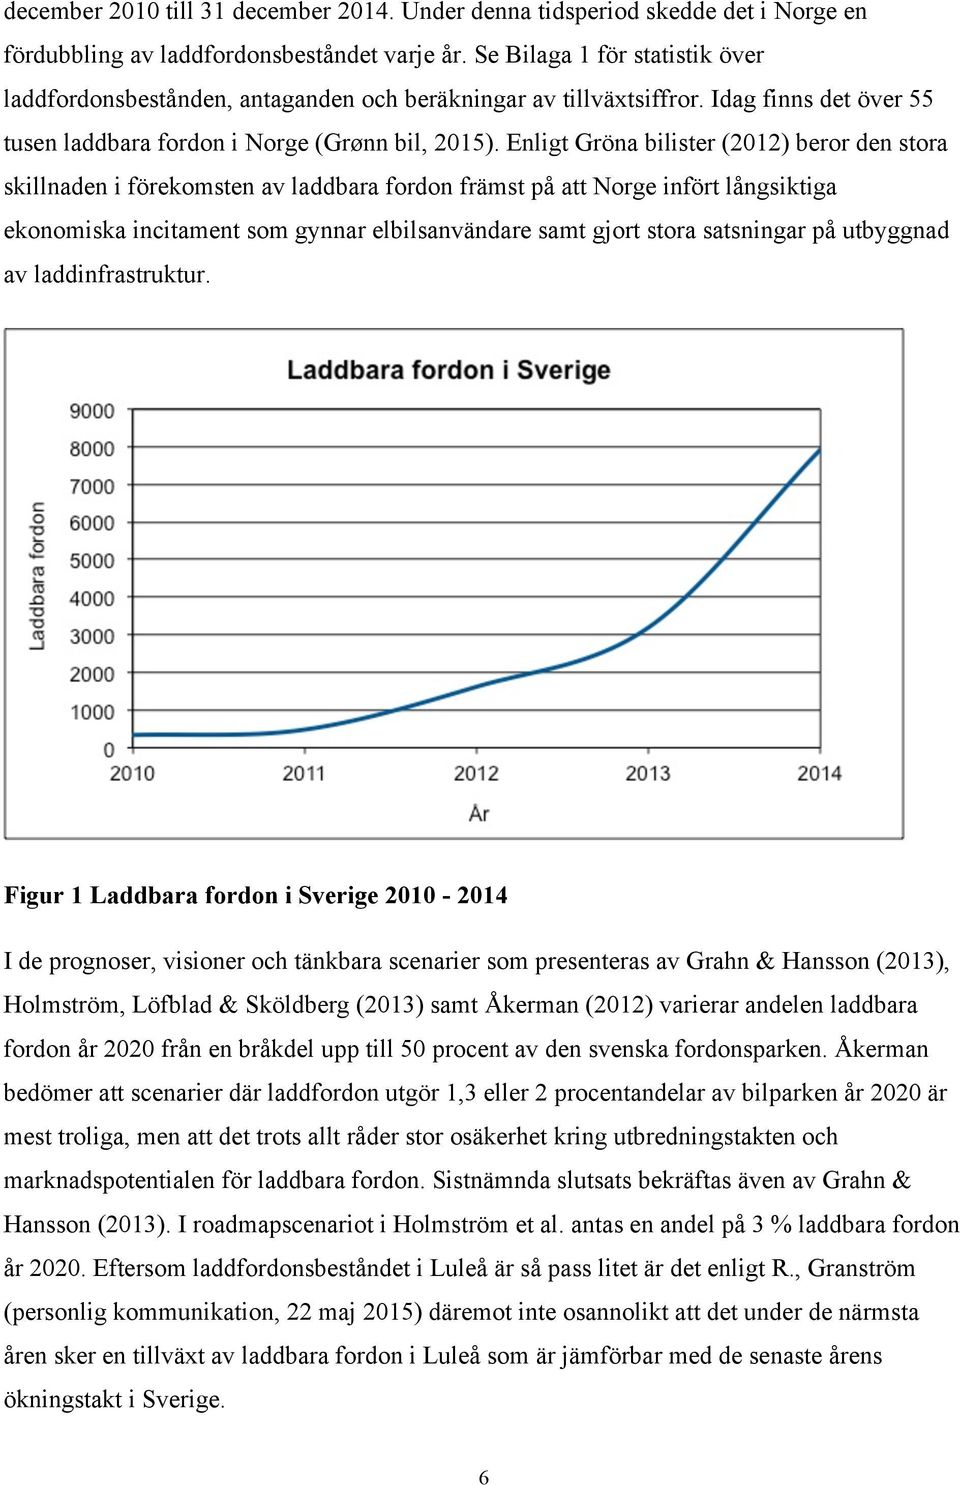 Enligt Gröna bilister (2012) beror den stora skillnaden i förekomsten av laddbara fordon främst på att Norge infört långsiktiga ekonomiska incitament som gynnar elbilsanvändare samt gjort stora